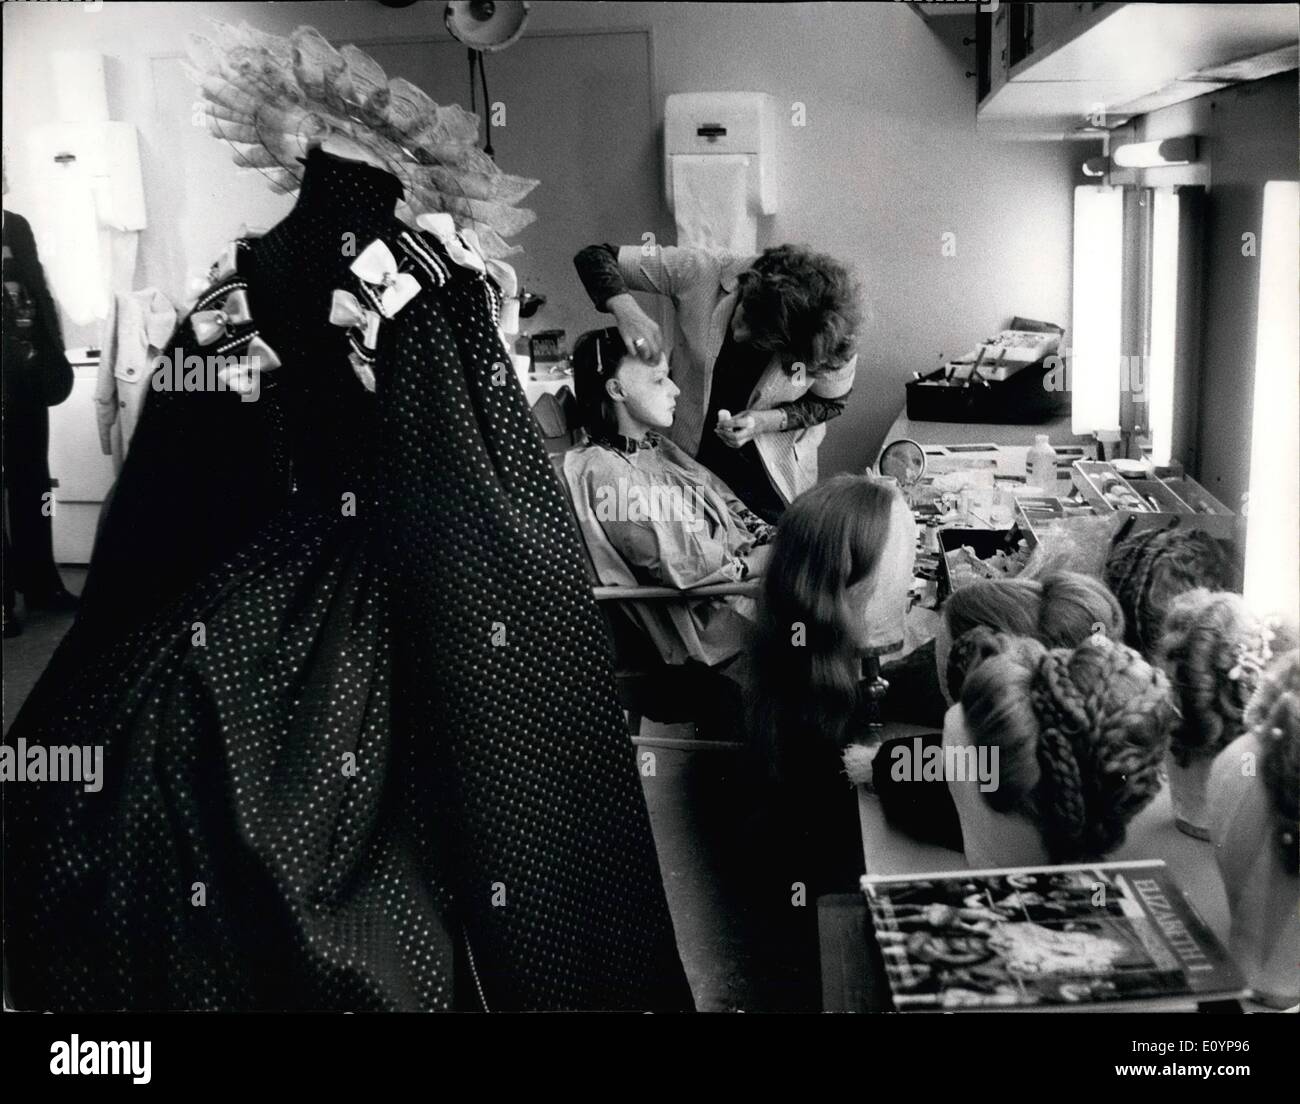 Febbraio 02, 1971 - Glenda Jackson in via sperimentale per la cosmesi sessione per ''Elizabeth R'' serie TV. Attrice britannica Glenda Jackson, che riproduce la Regina Elisabetta I nel nuovo BBC-serie TV ''Elizabeth R'" aveva un 3 ore di make-up session per l'ultimo episodio della serie, quando interpreta la parte di 69-anno-vecchia regina. (Glenda Jackson è stato nominato per un Oscar per il suo ruolo in Ken Russel ''Le donne nell'amore") Foto Stock